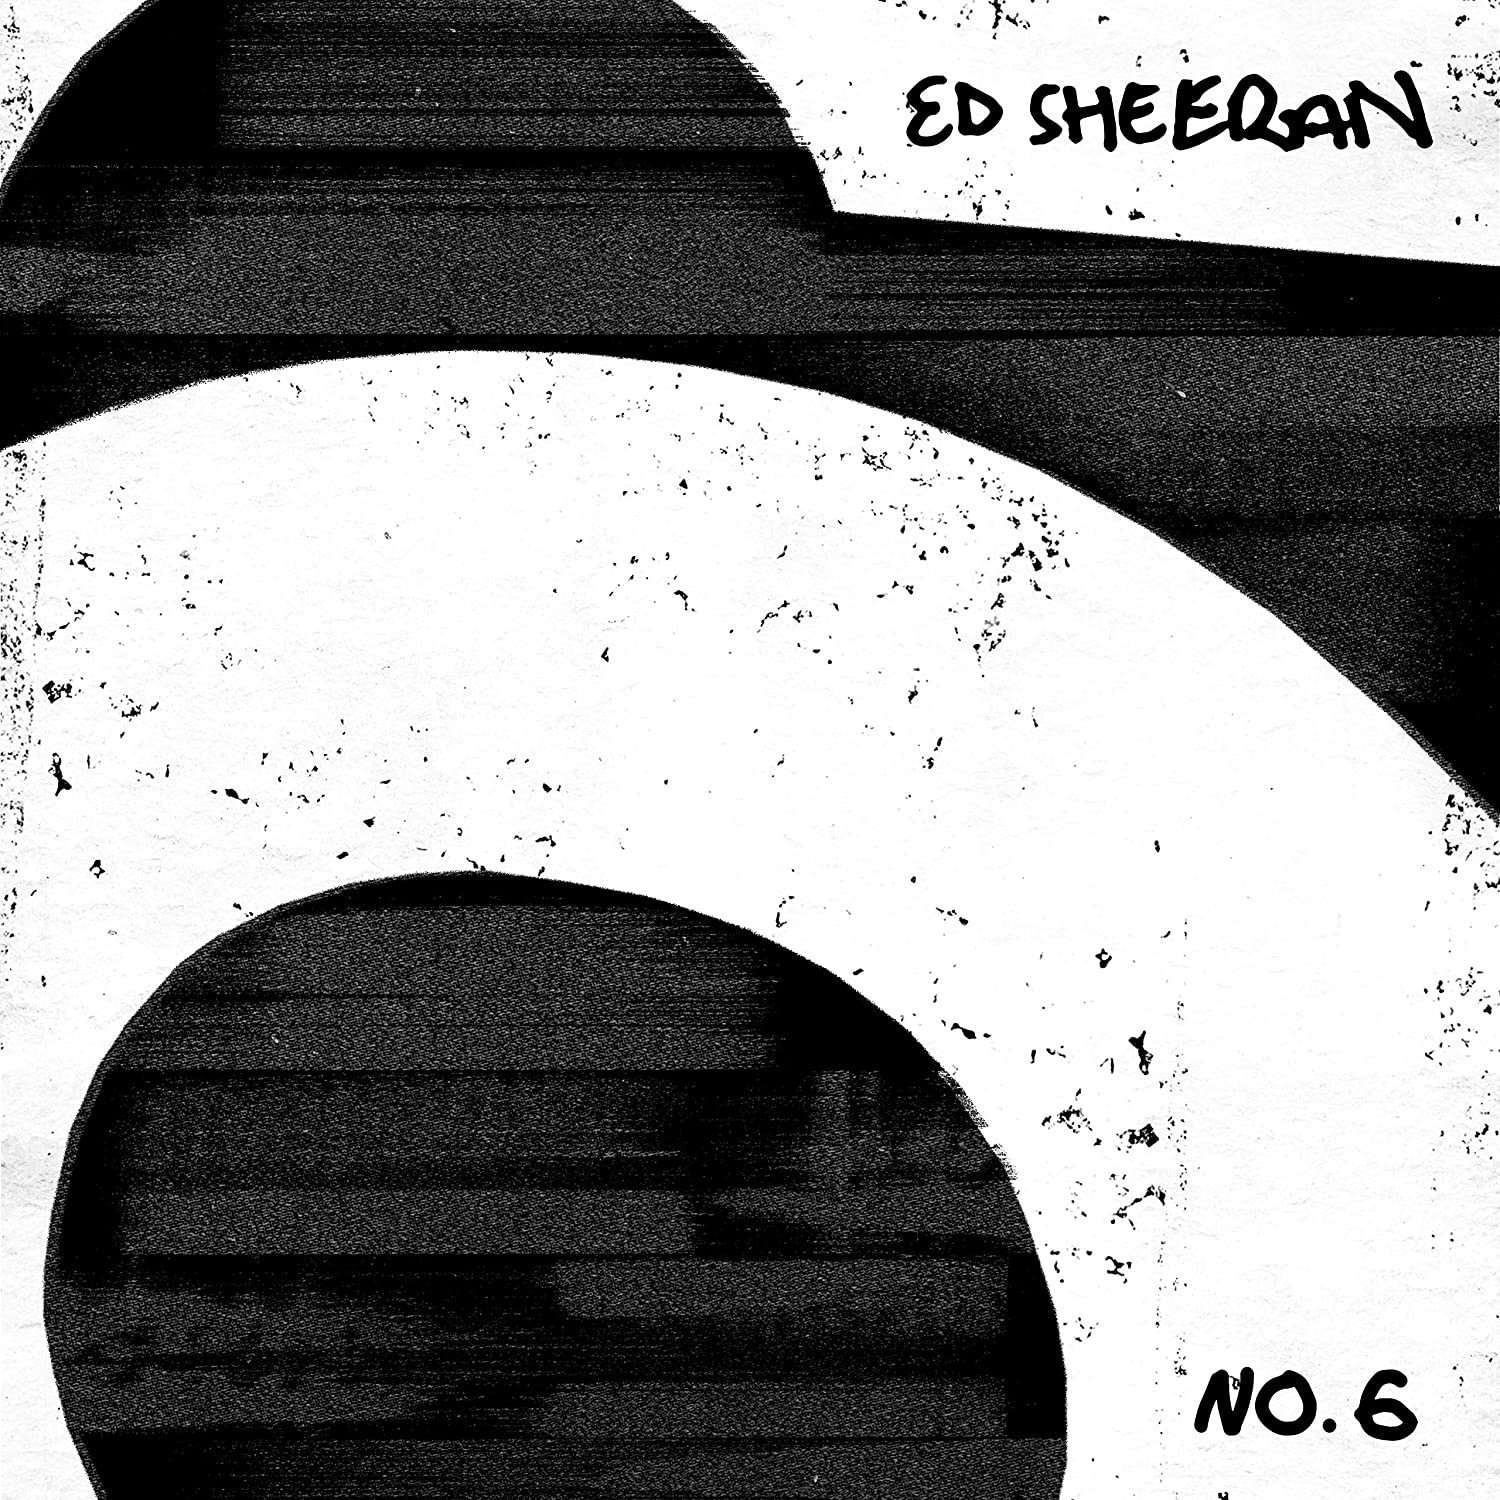 Vinyl Record Ed Sheeran - No. 6 Collaborations Project (LP)